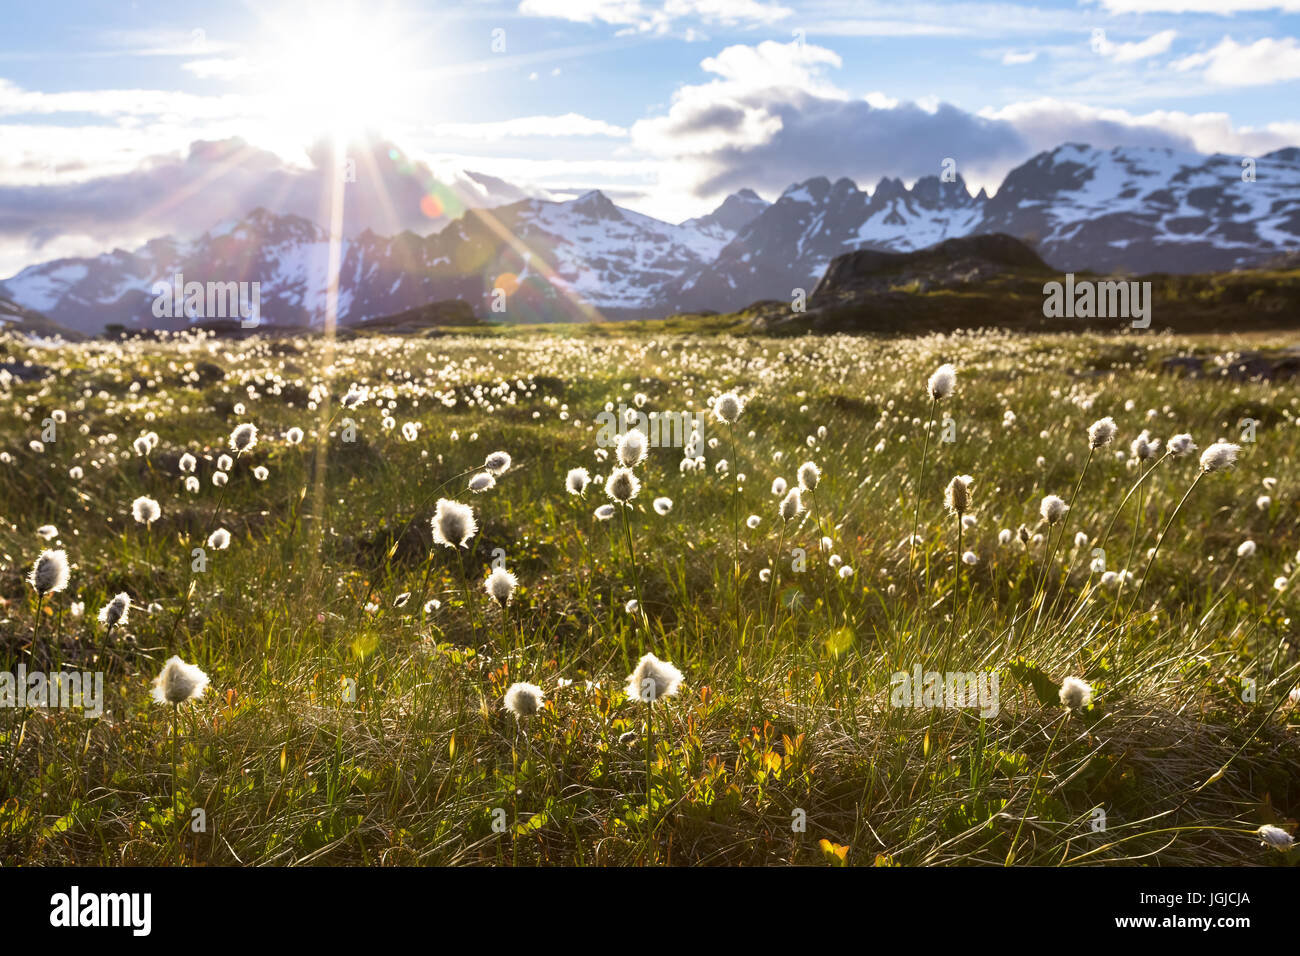 Norwegische Landschaft im Sommer mit Sonne und Berge im Hintergrund und Wollgras Wollgras in Blüte steht im Vordergrund, Norwegen Stockfoto